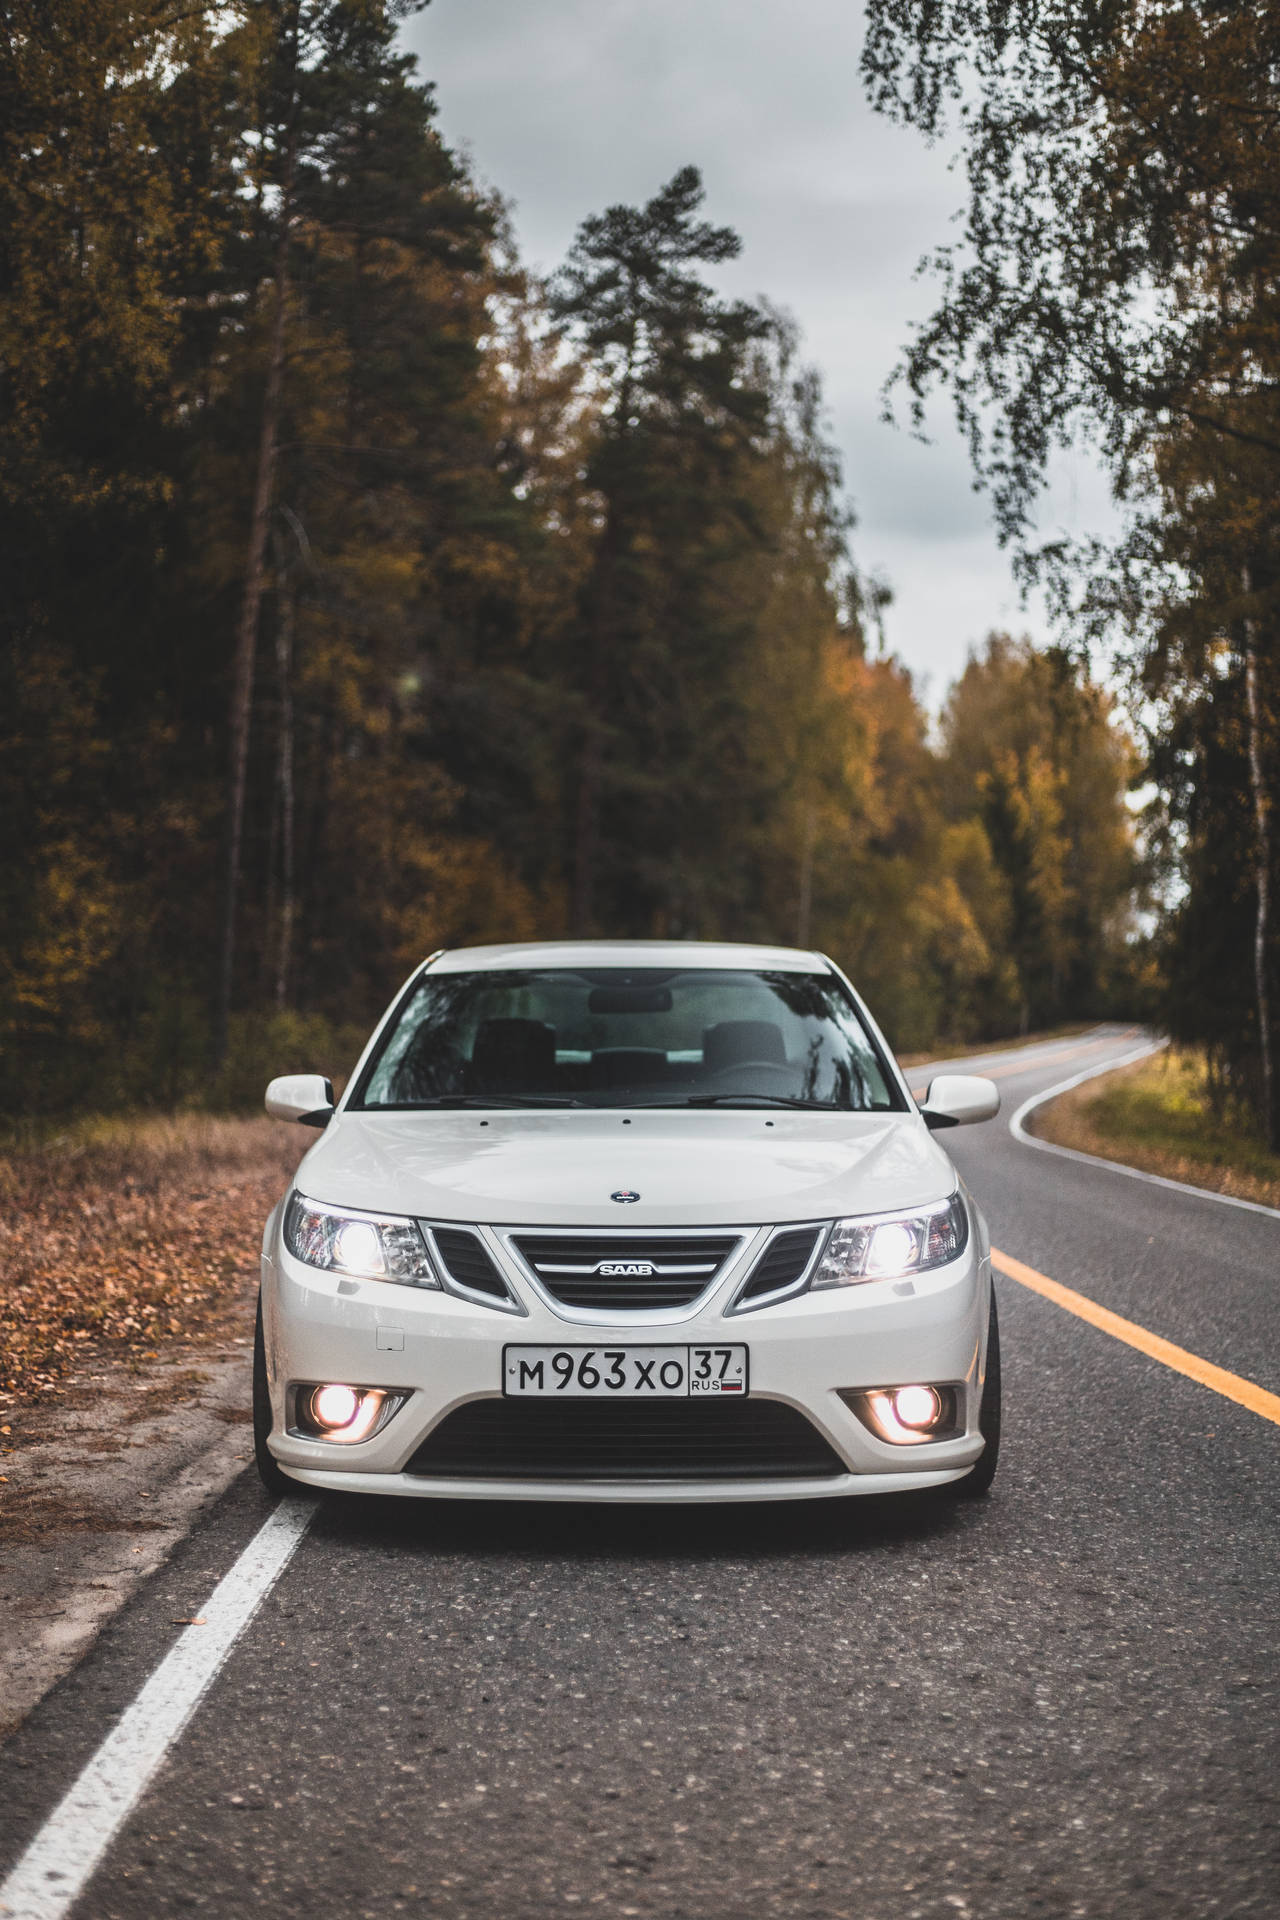 Saab Background